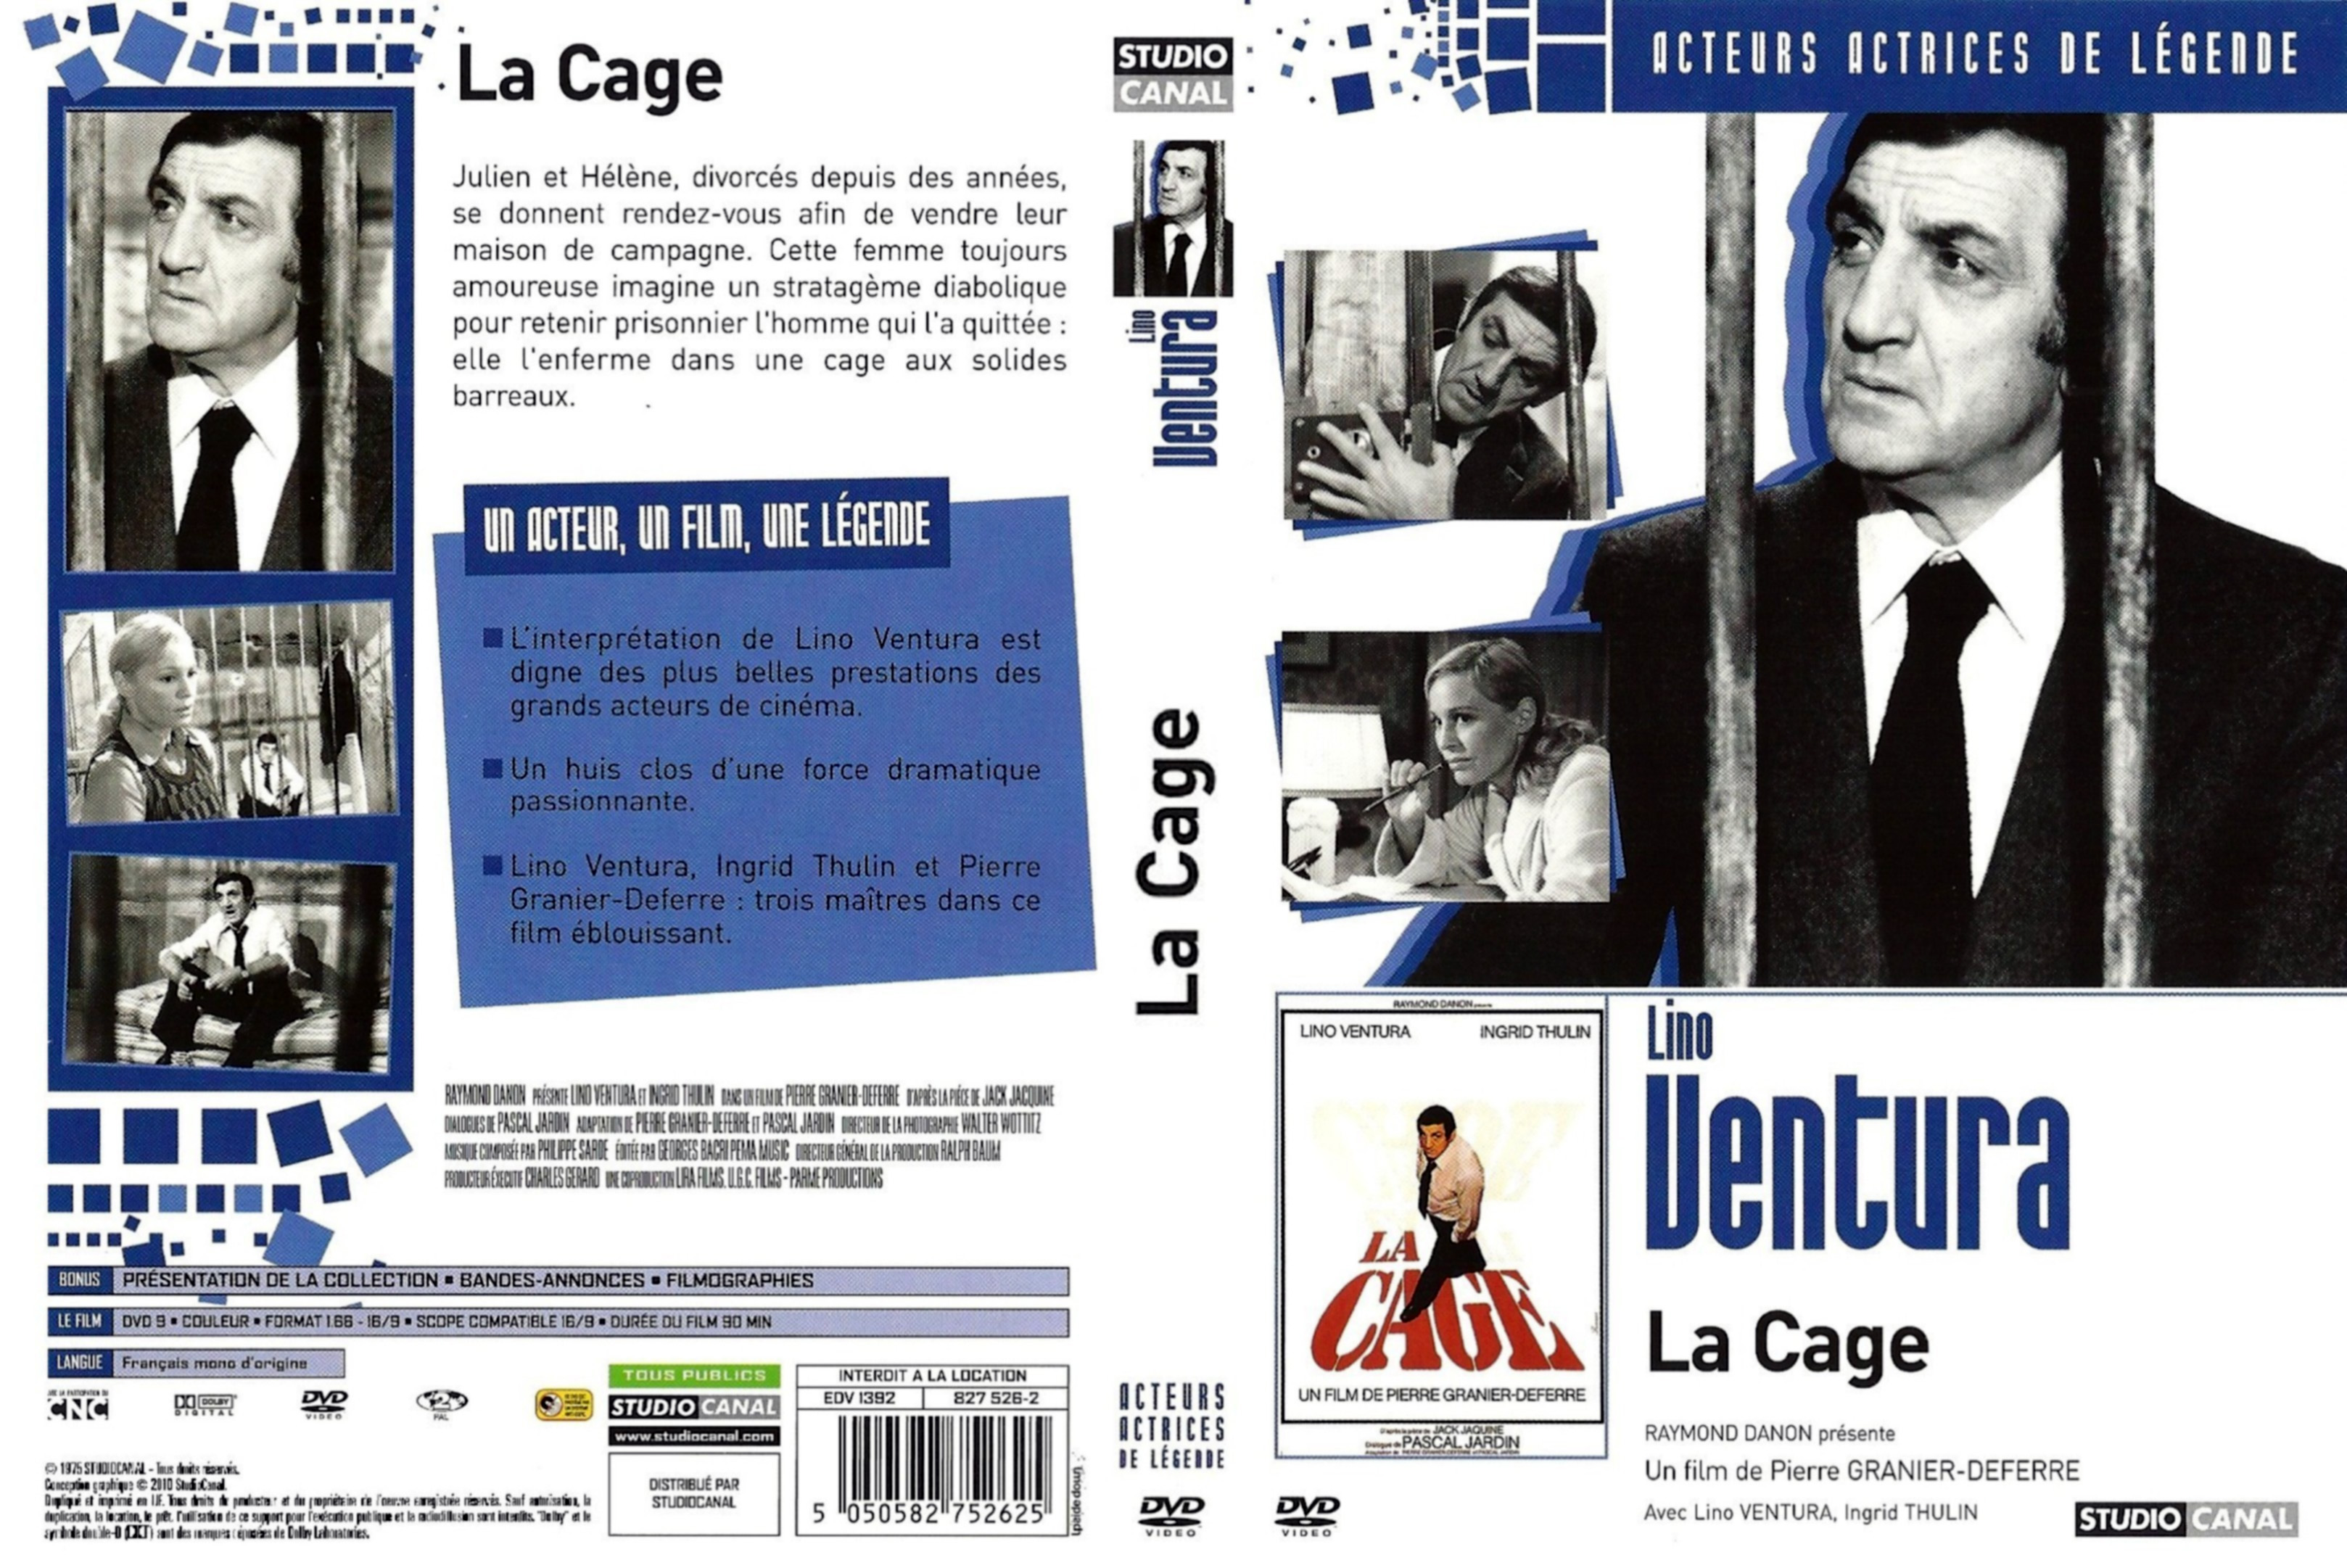 Jaquette DVD La cage